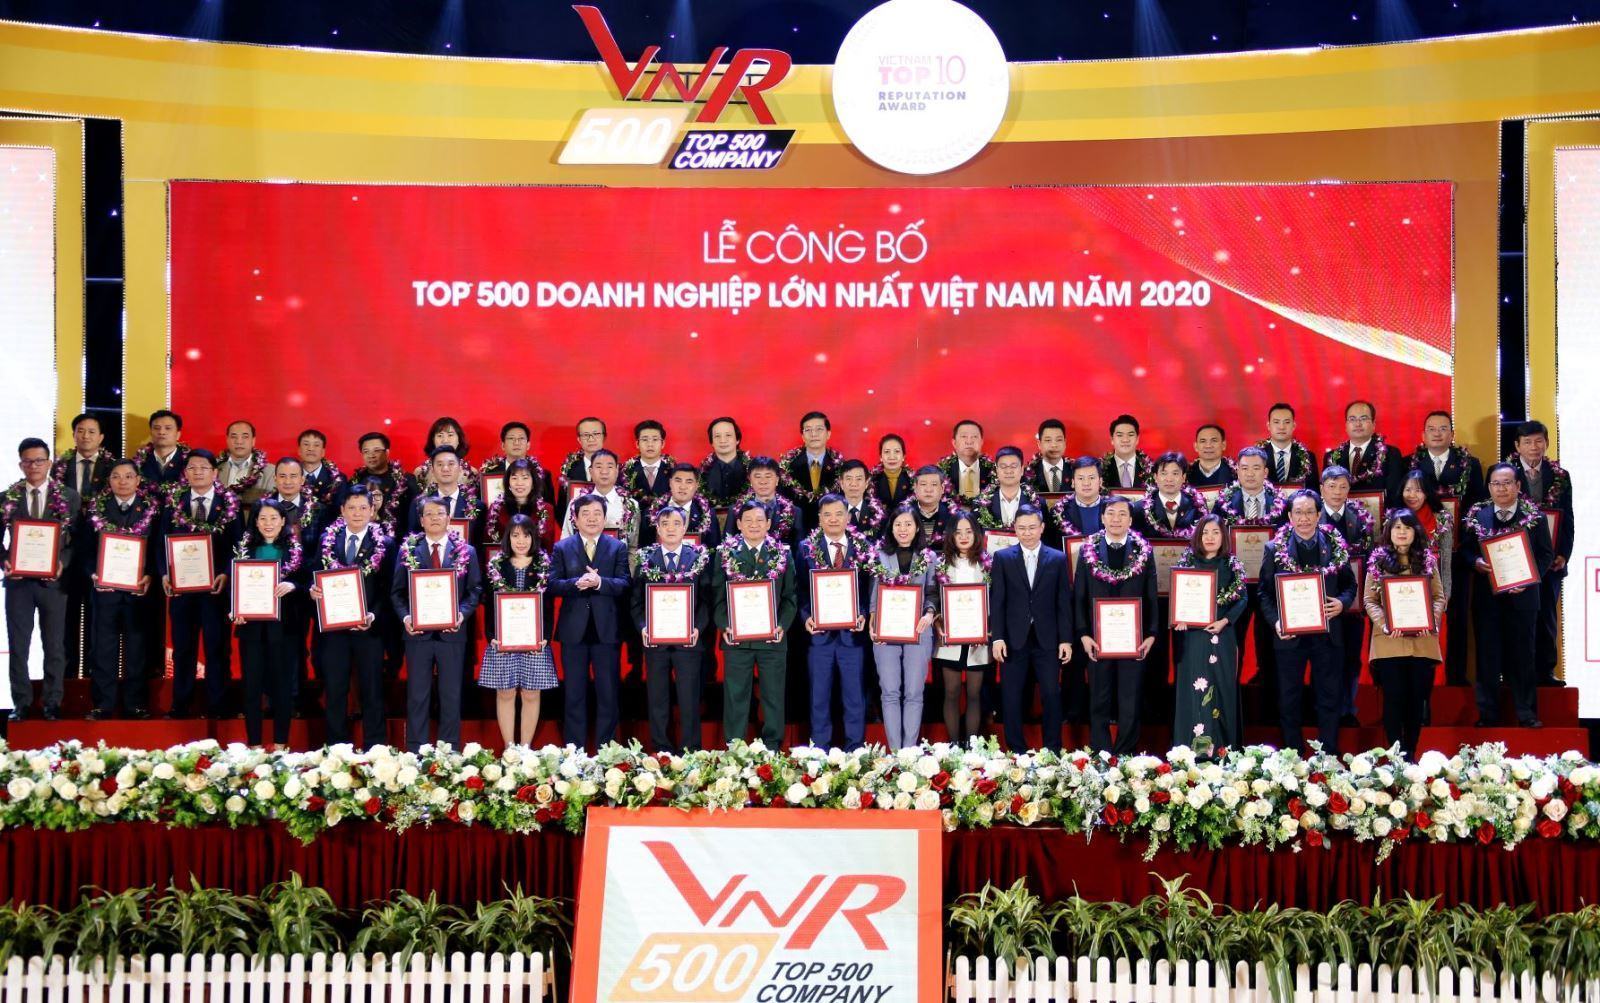 Tập đoàn Đất Xanh Group được vinh danh VNR500 doanh nghiệp lớn nhất VN 2020